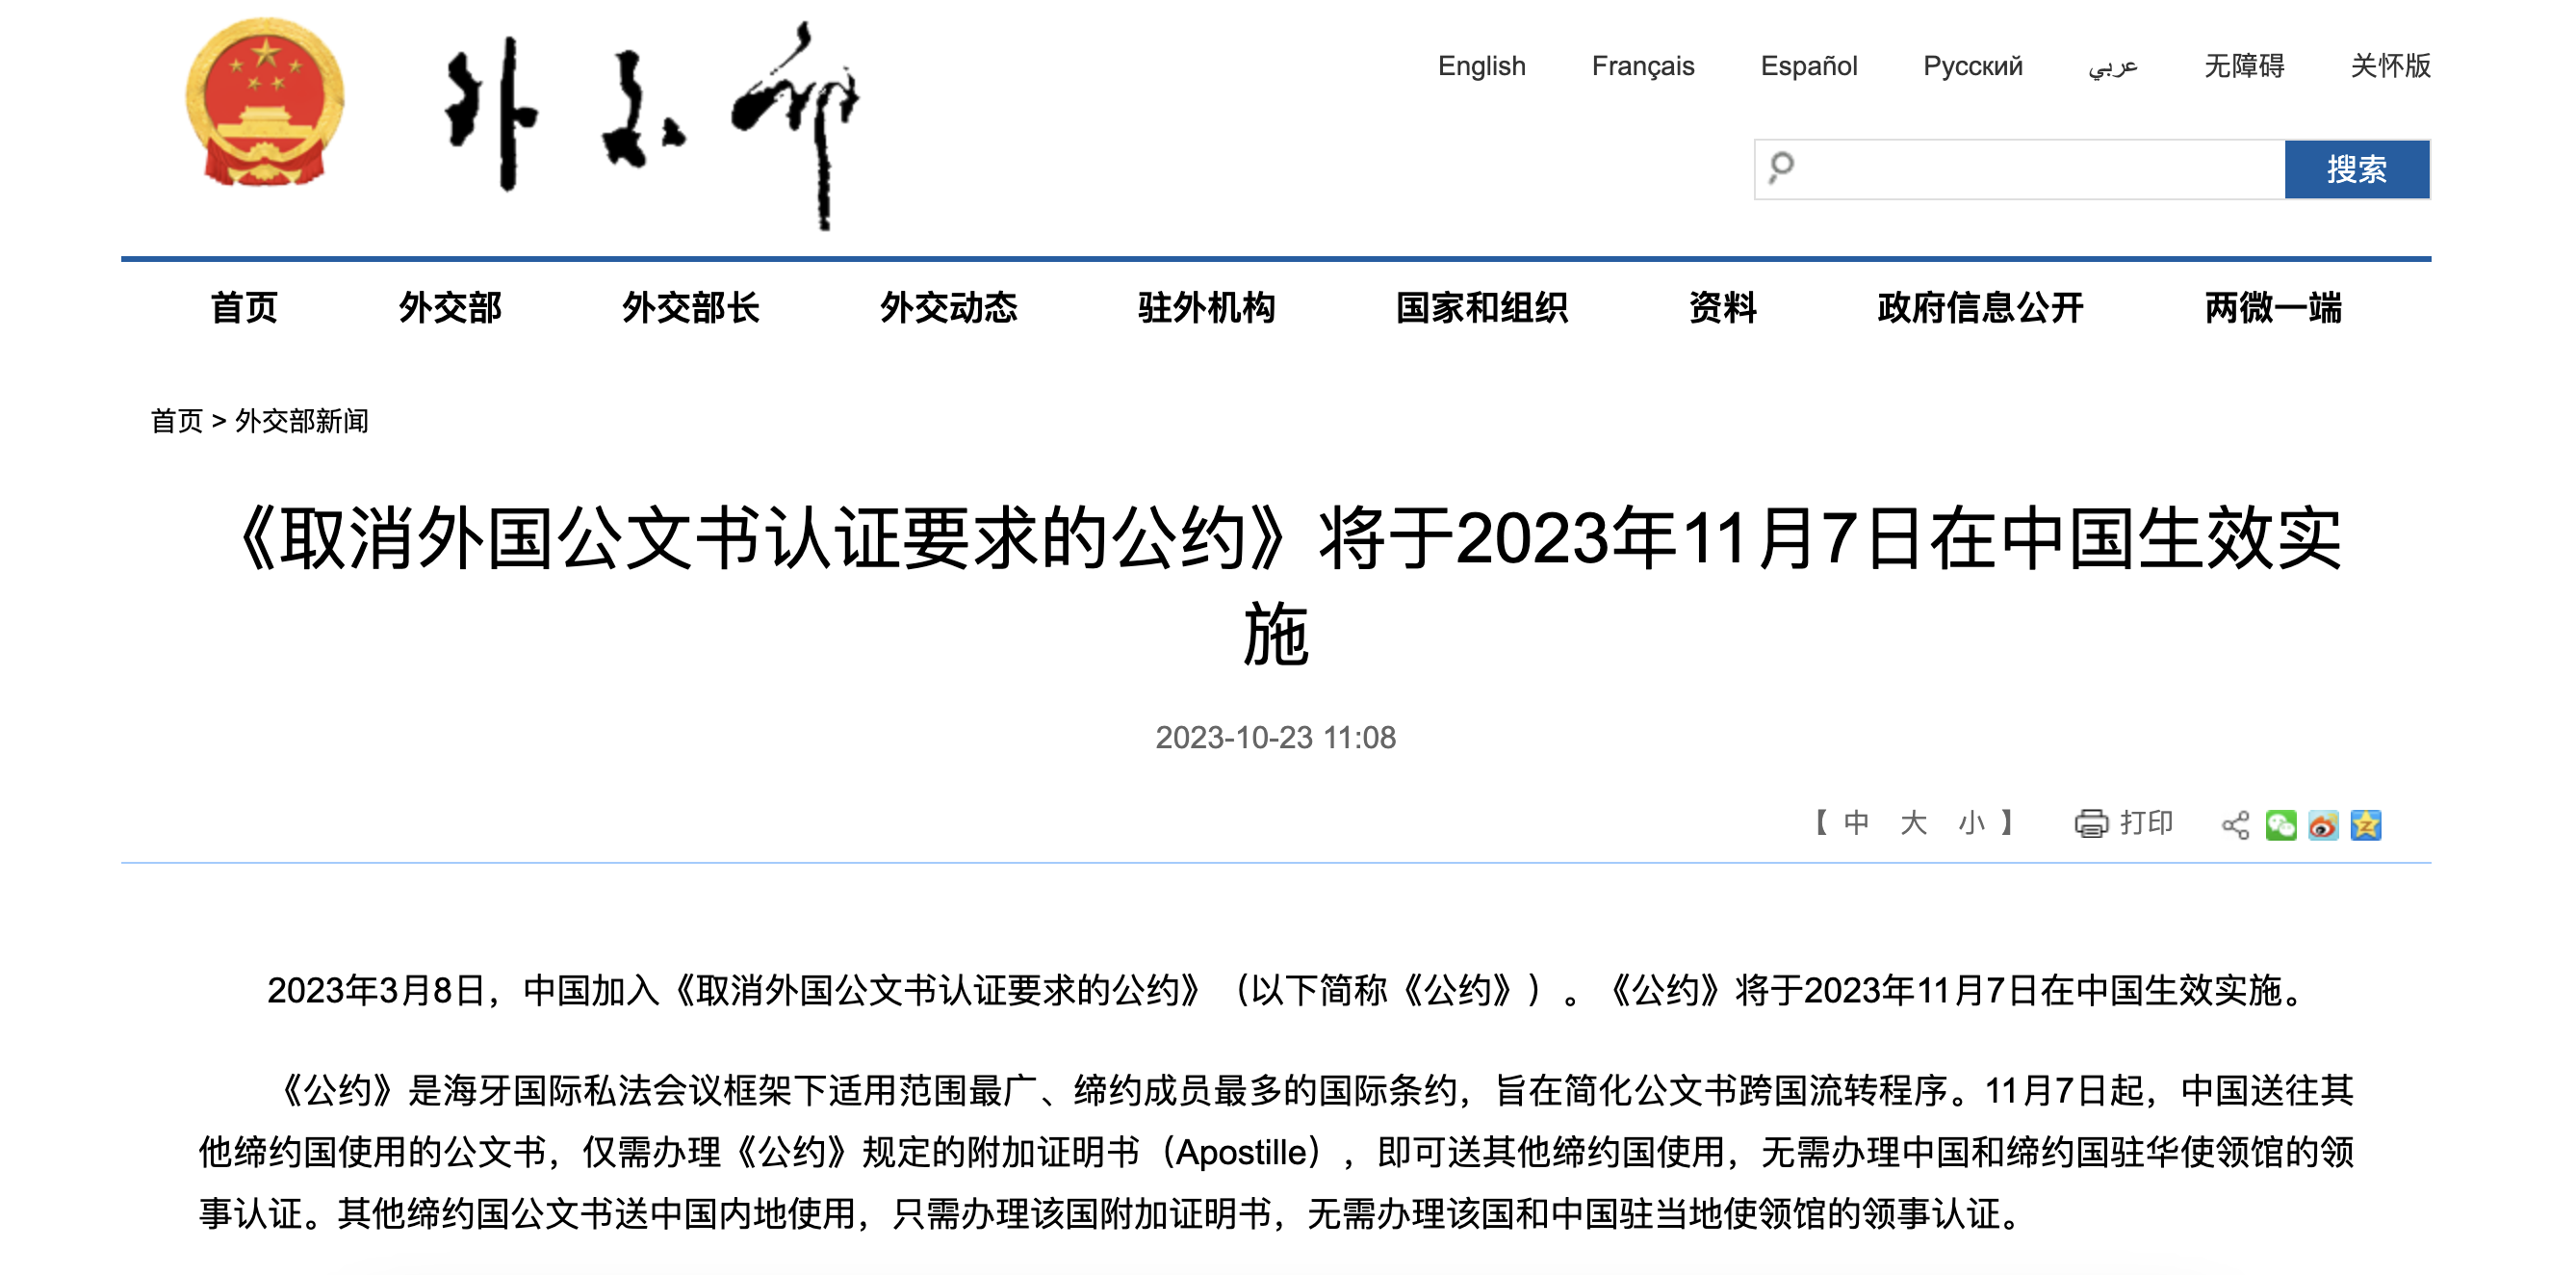 《取消外国公文书认证要求的公约》将于2023年11月7日在中国生效实施